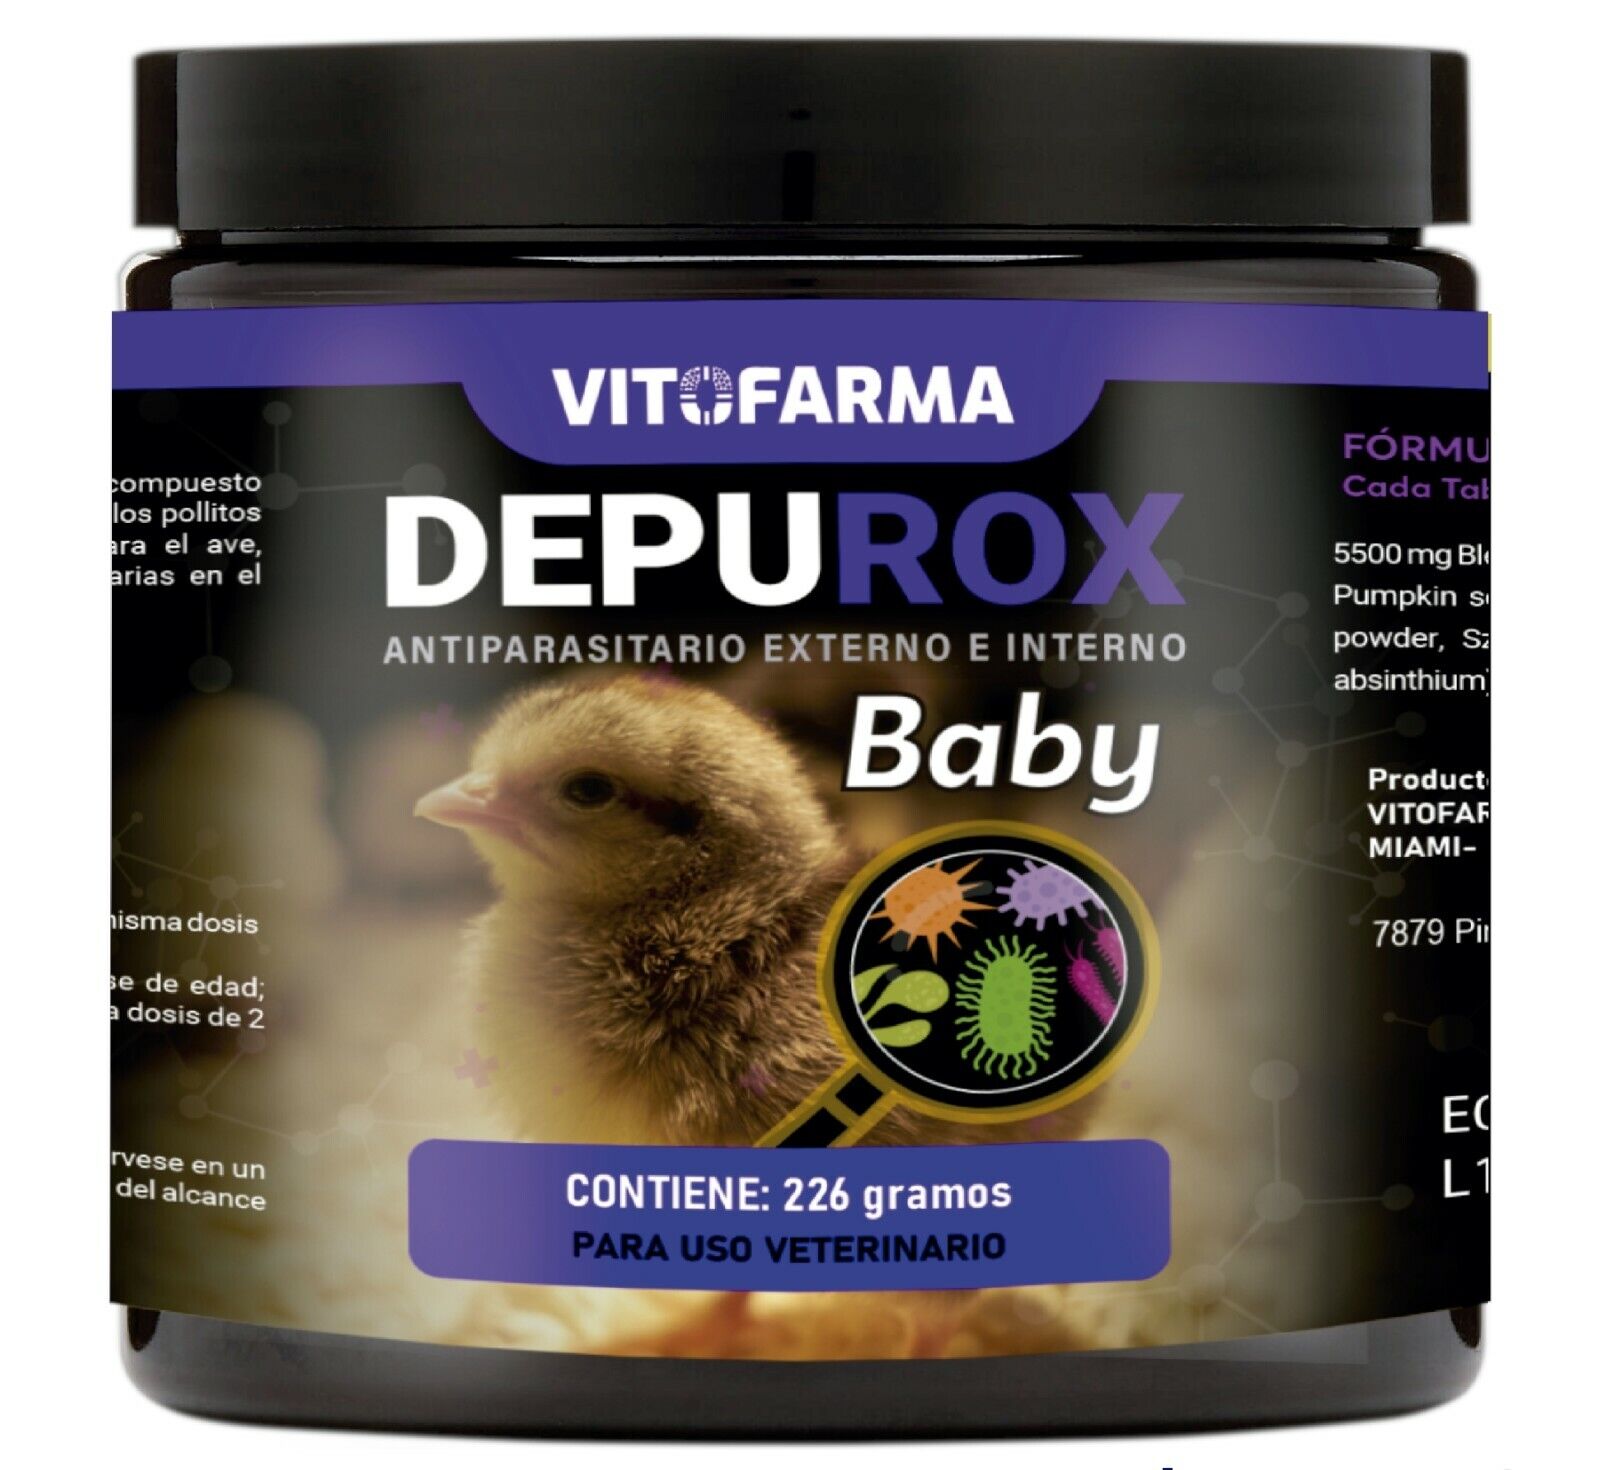 VITOFARMA DEPUROX BABY 224G DESPARASITANTE PARA POLLITOS VITAMINAS PARA GALLOS VITOFARMA Antiparasitic organic